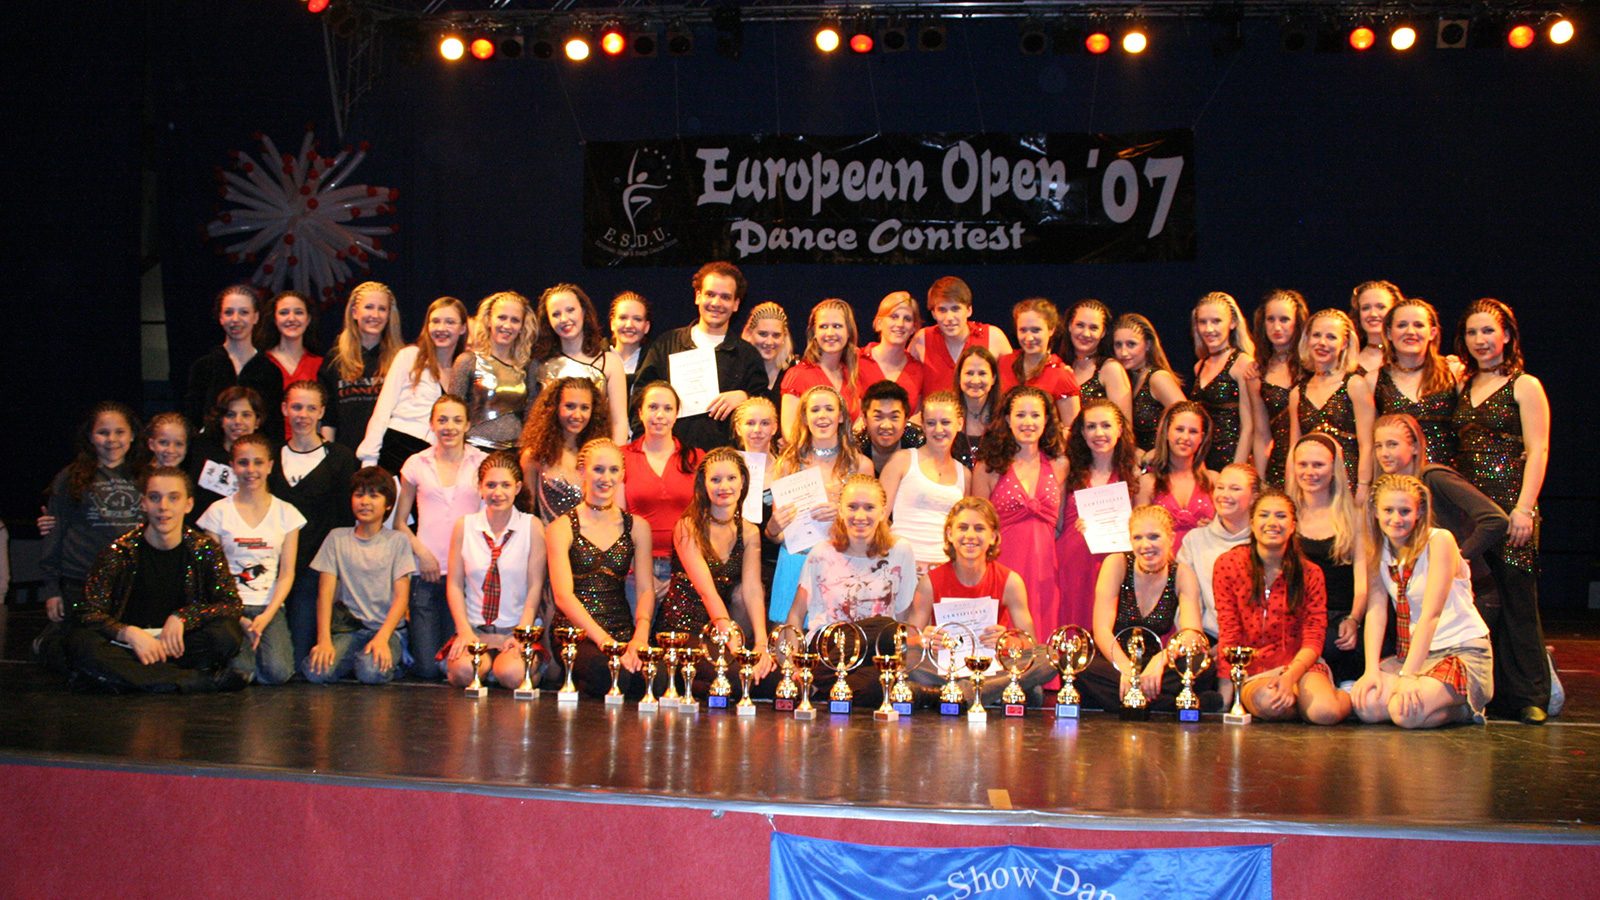 European Open 2007